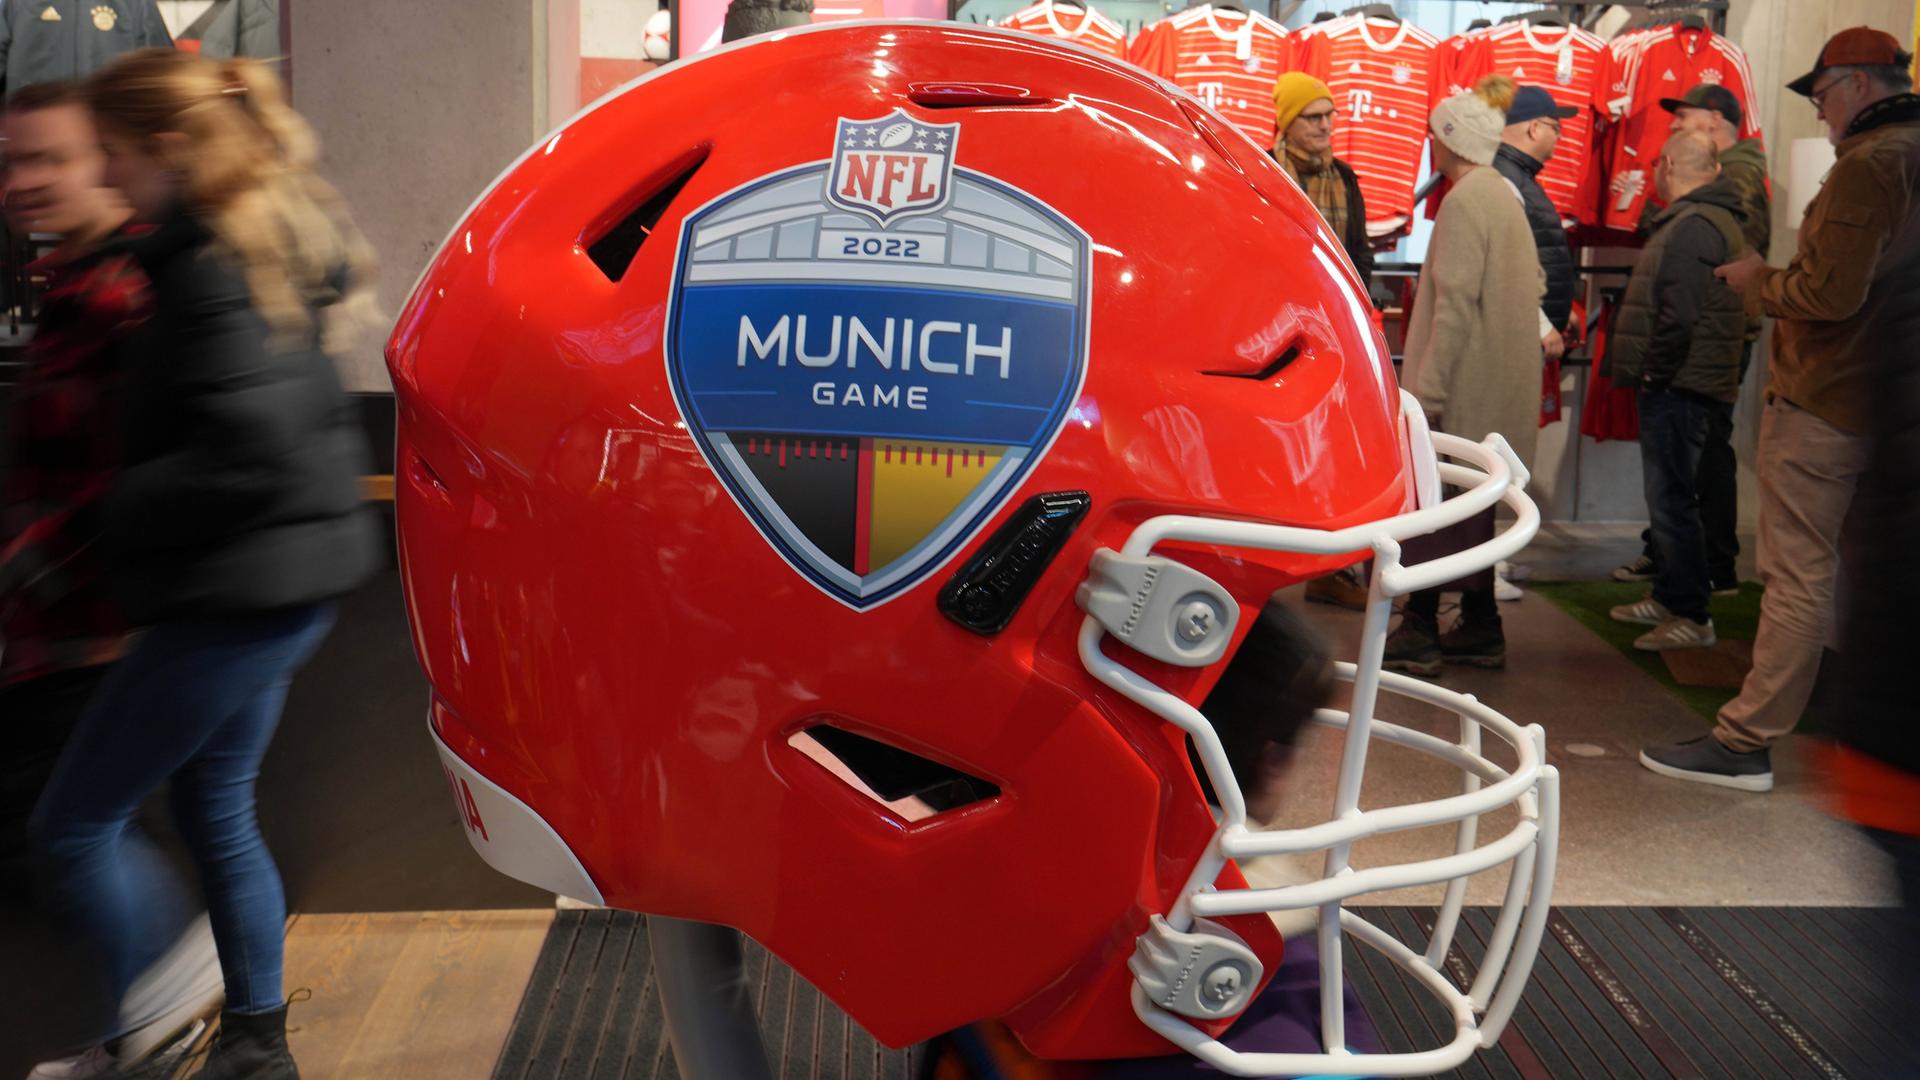 NFL Munich Game Shop Information